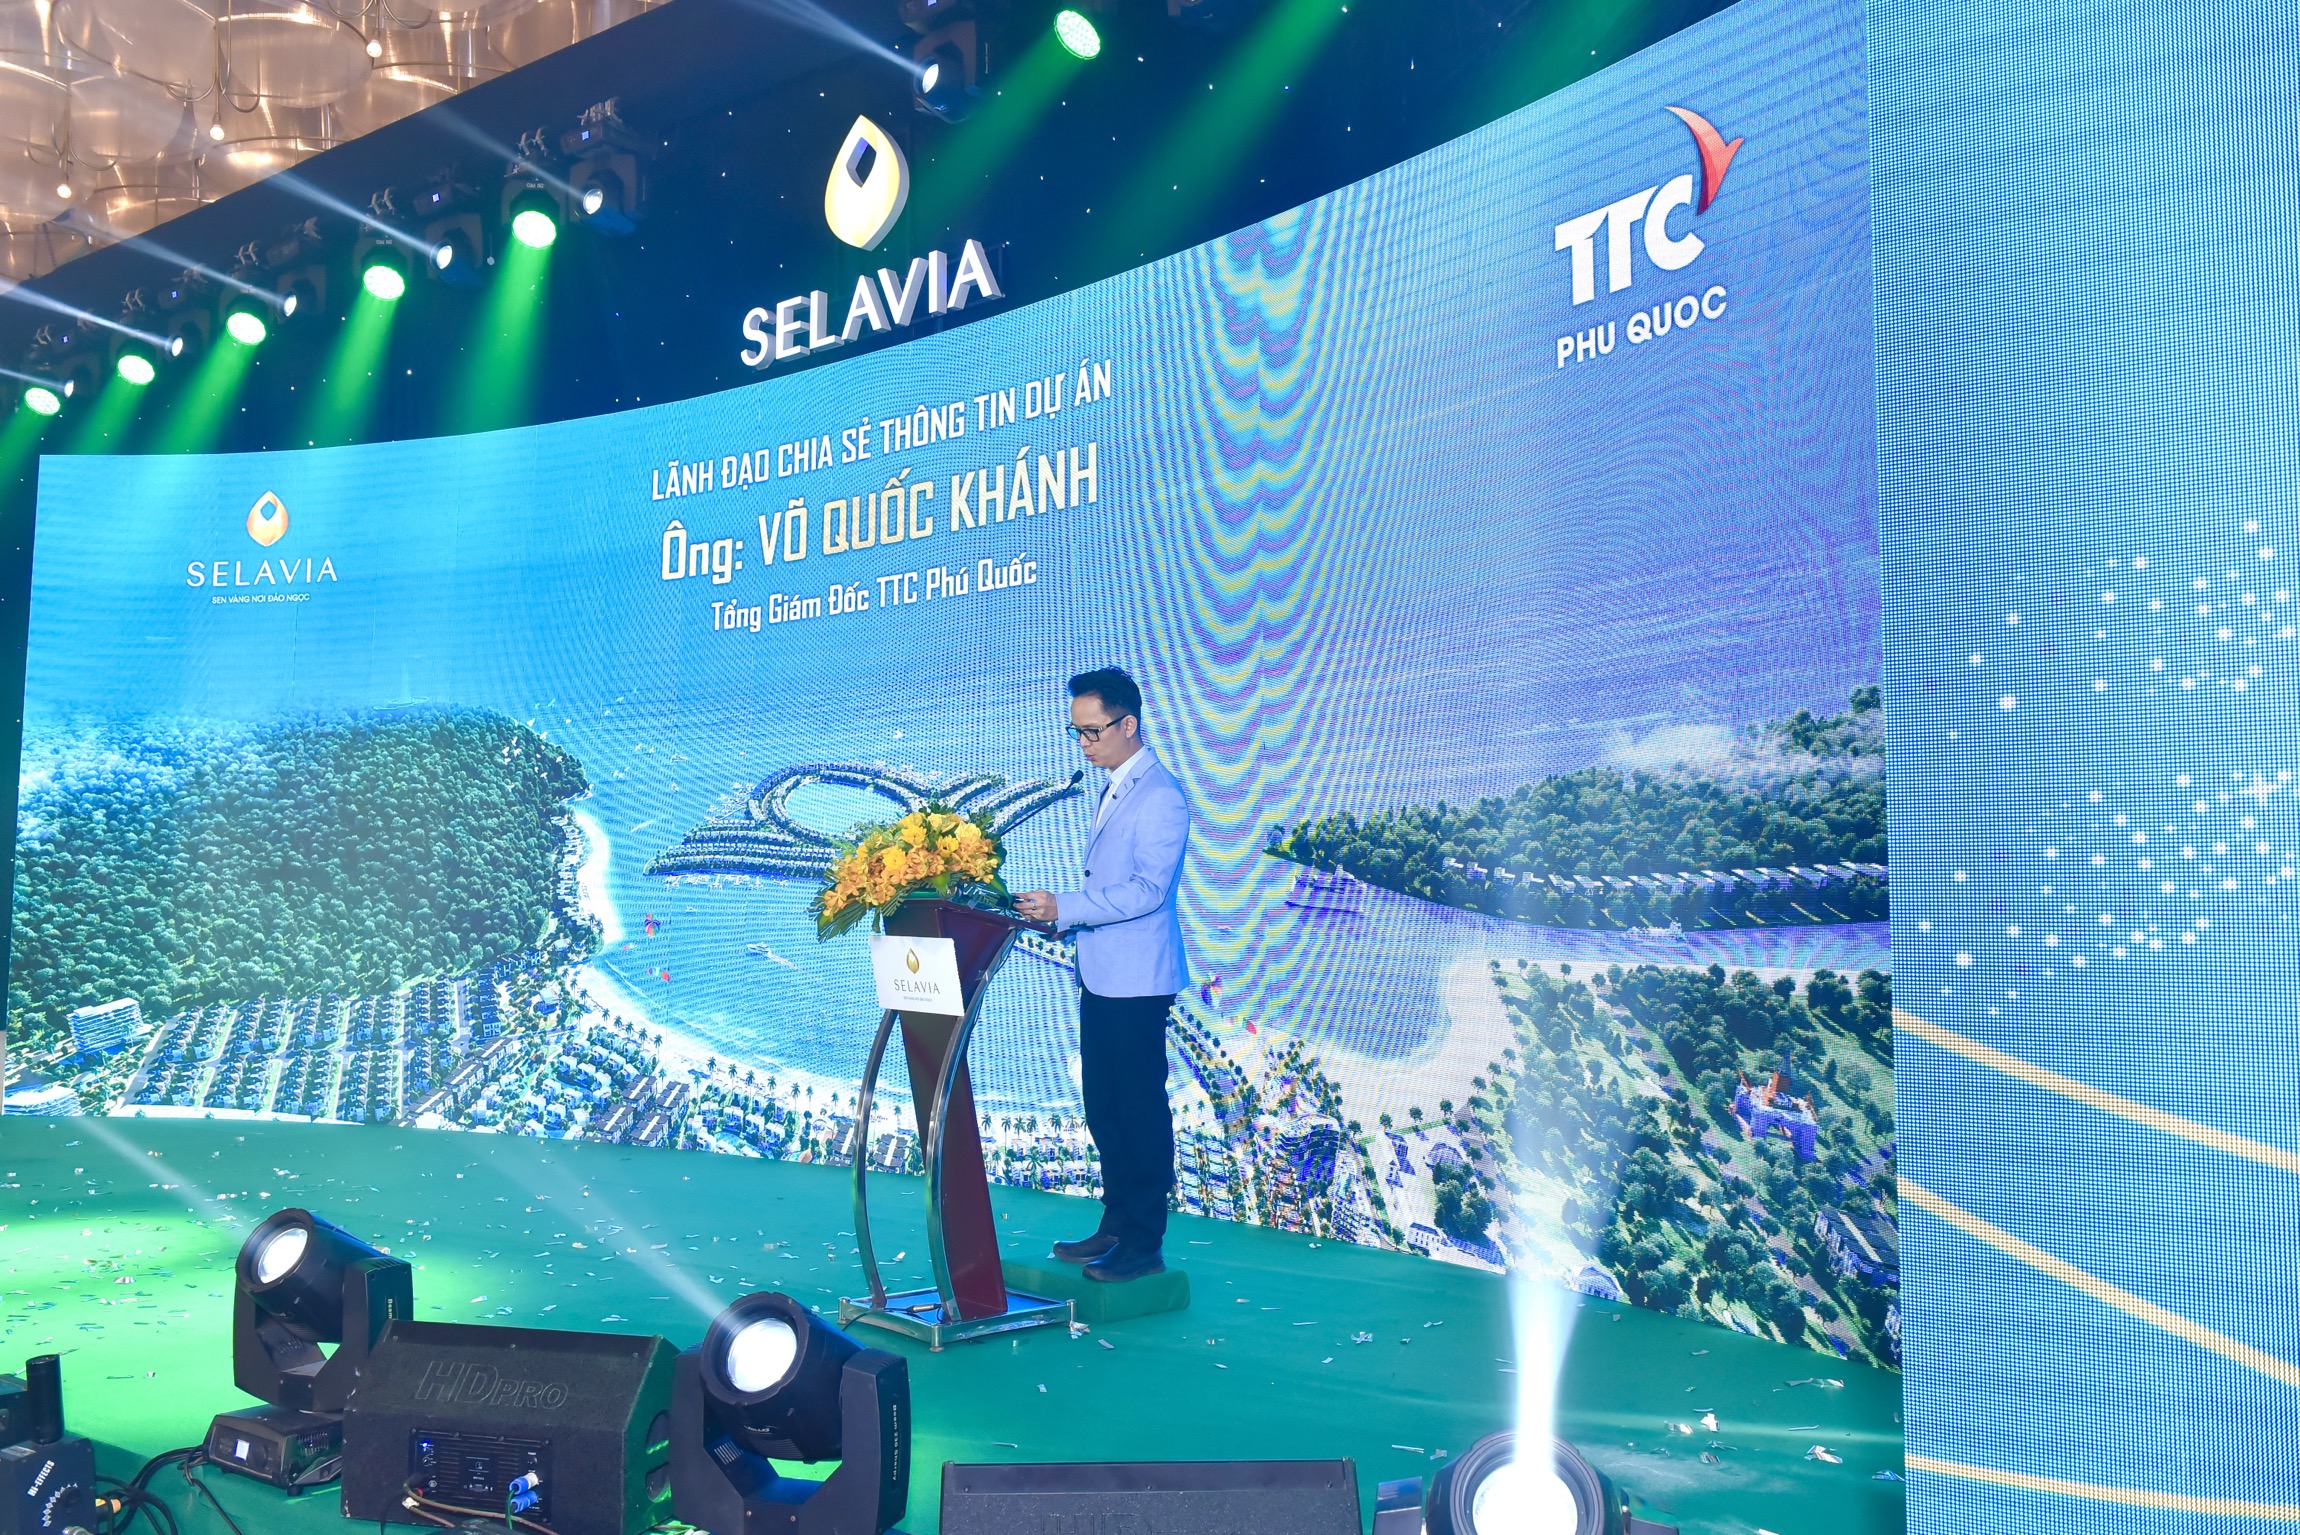 Lễ công bố và ra quân dự án Selavia Phú Quốc của tập đoàn TTC - ảnh 4